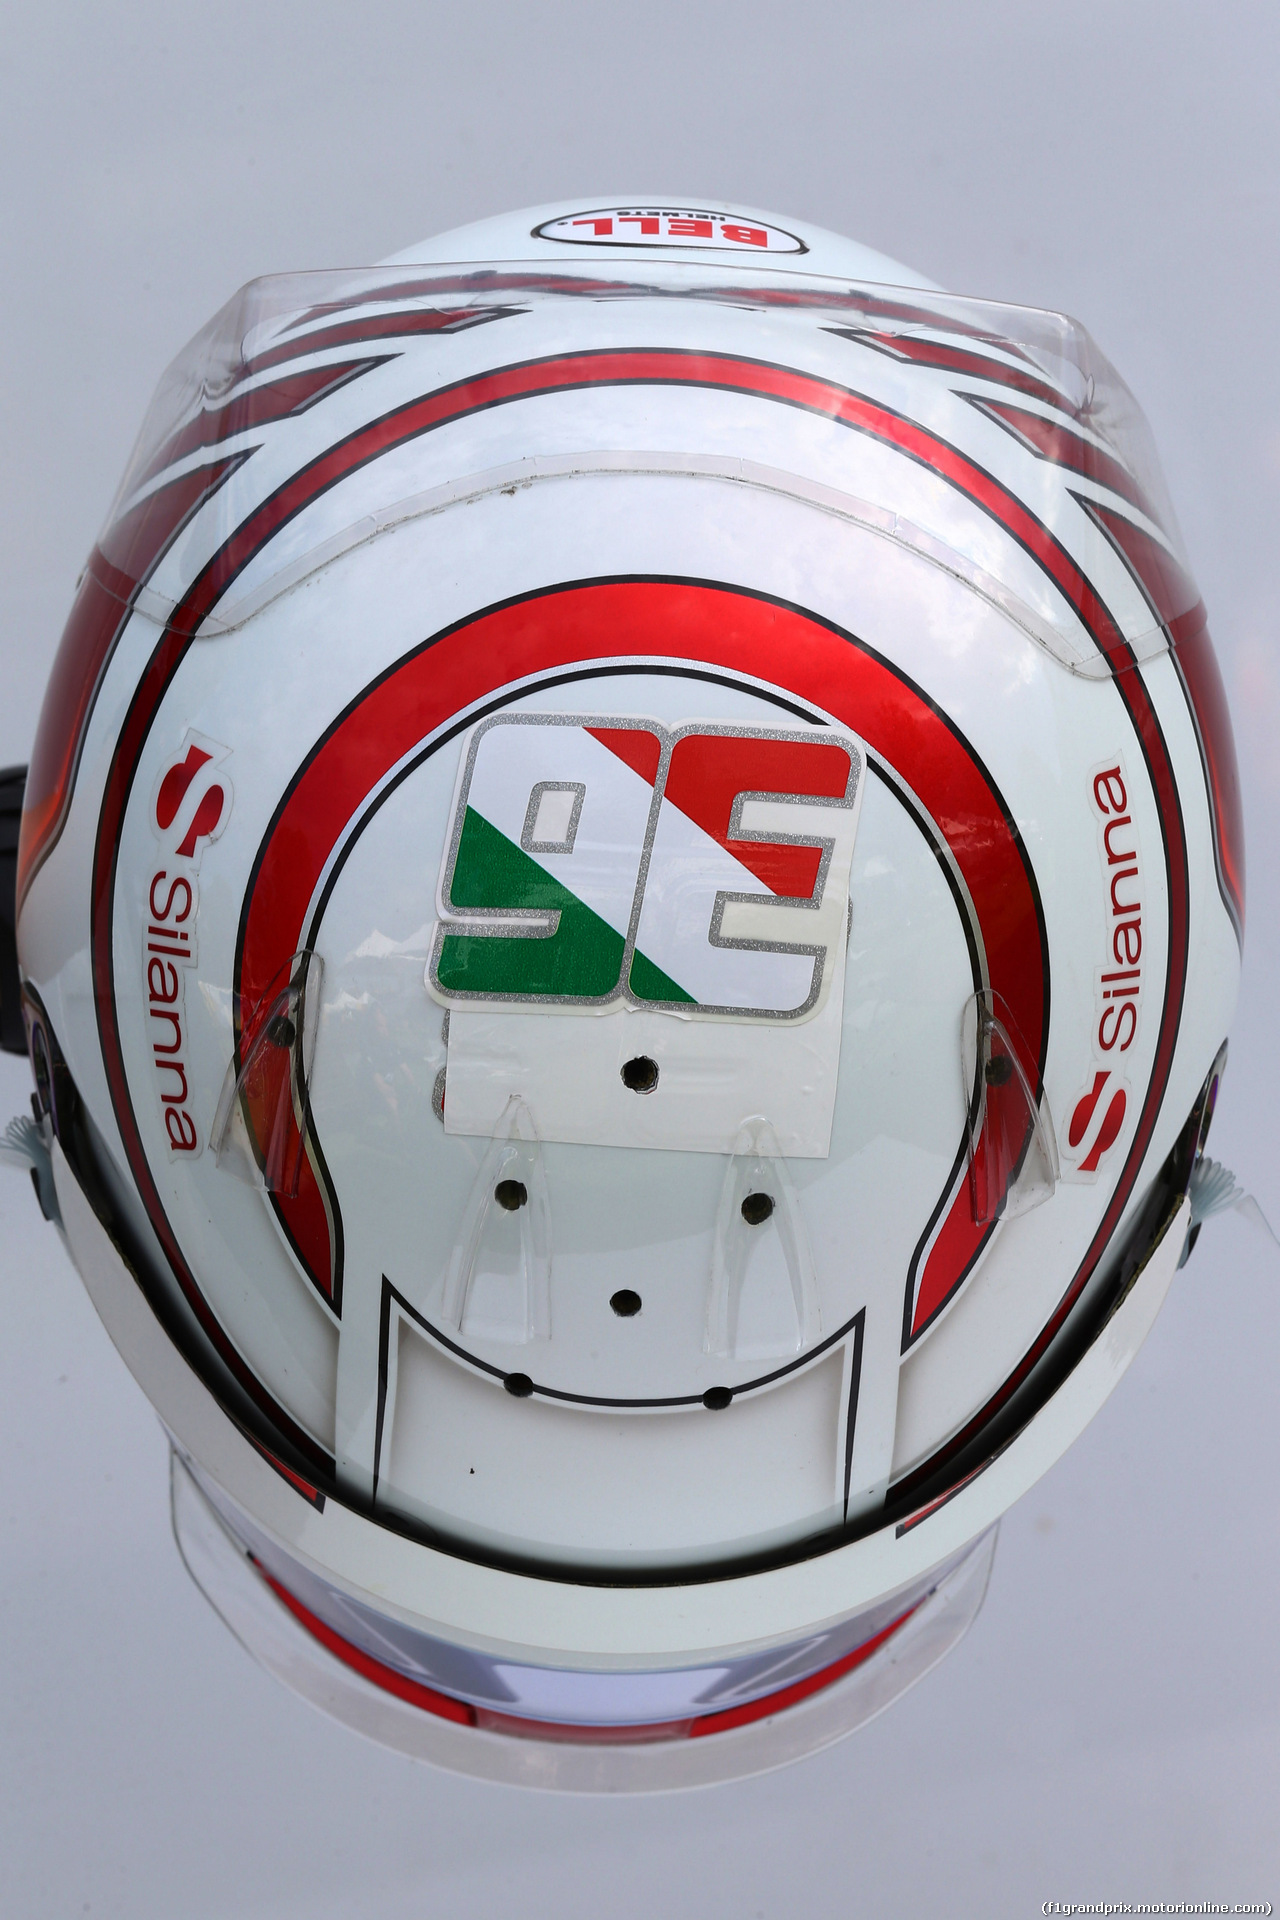 GP AUSTRALIA, 25.03.2017 - Qualifiche, The helmet of Antonio Giovinazzi (ITA) Sauber C36